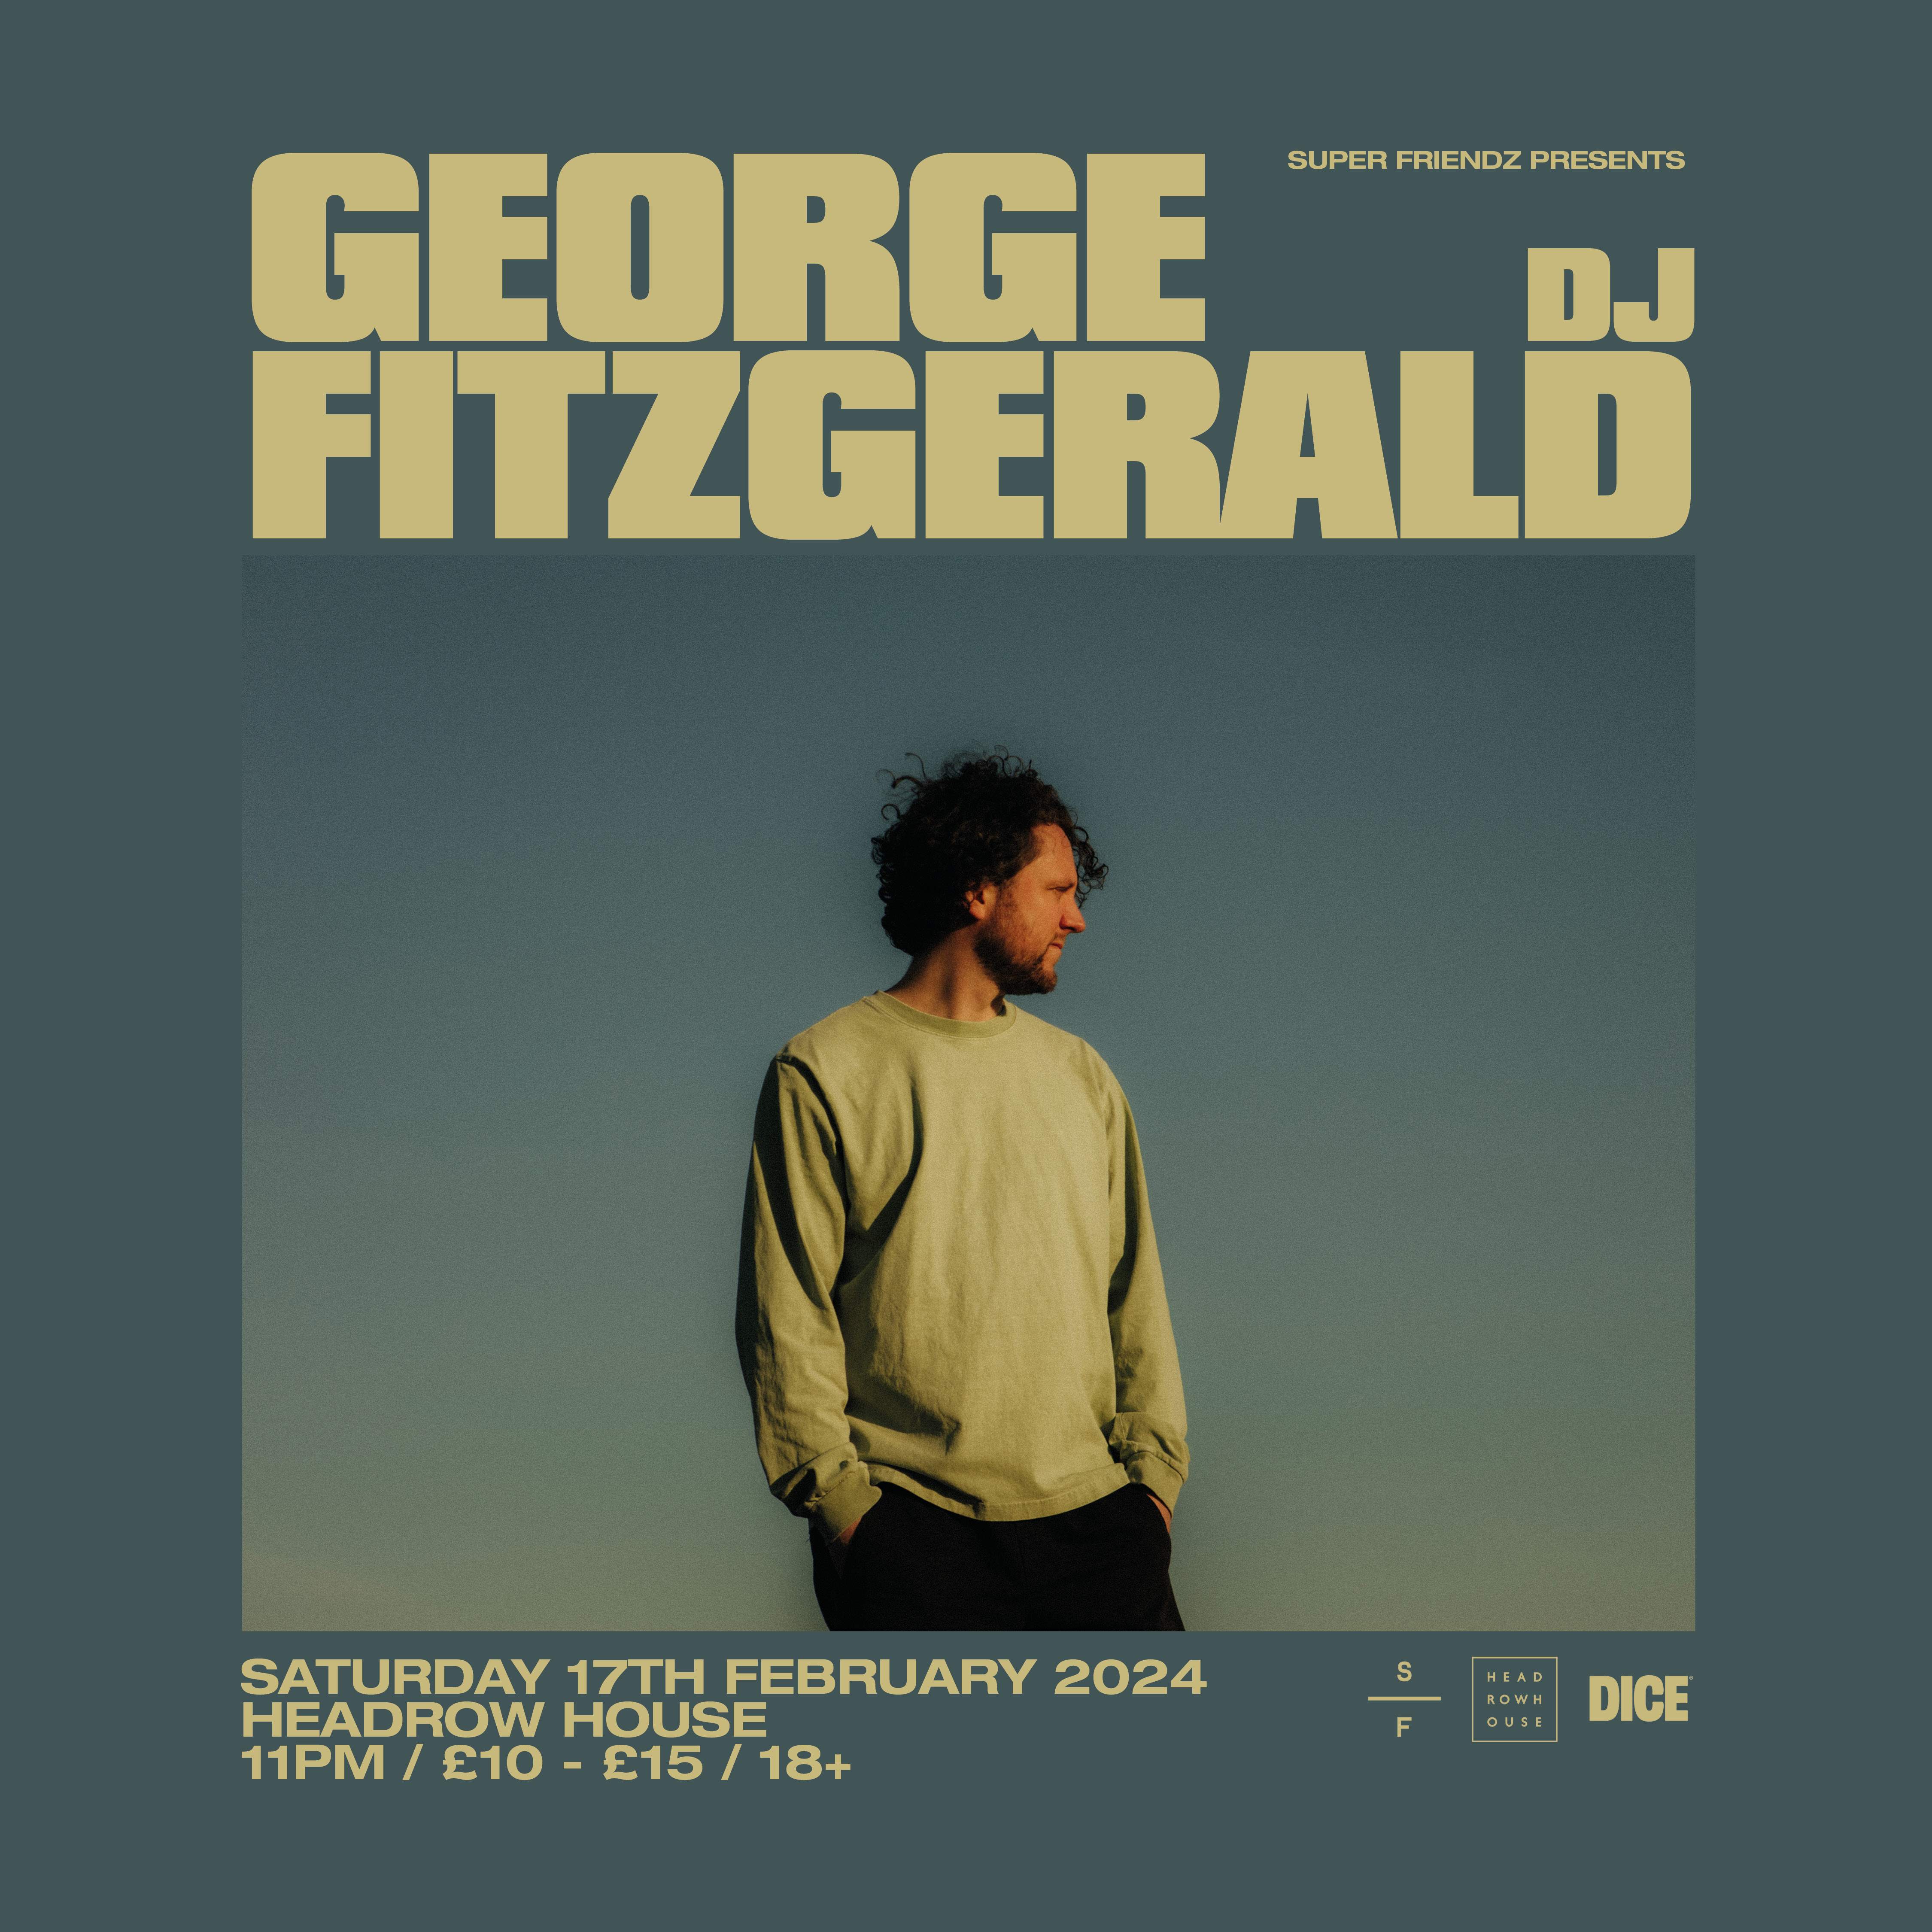 George FitzGerald (DJ) - Página frontal